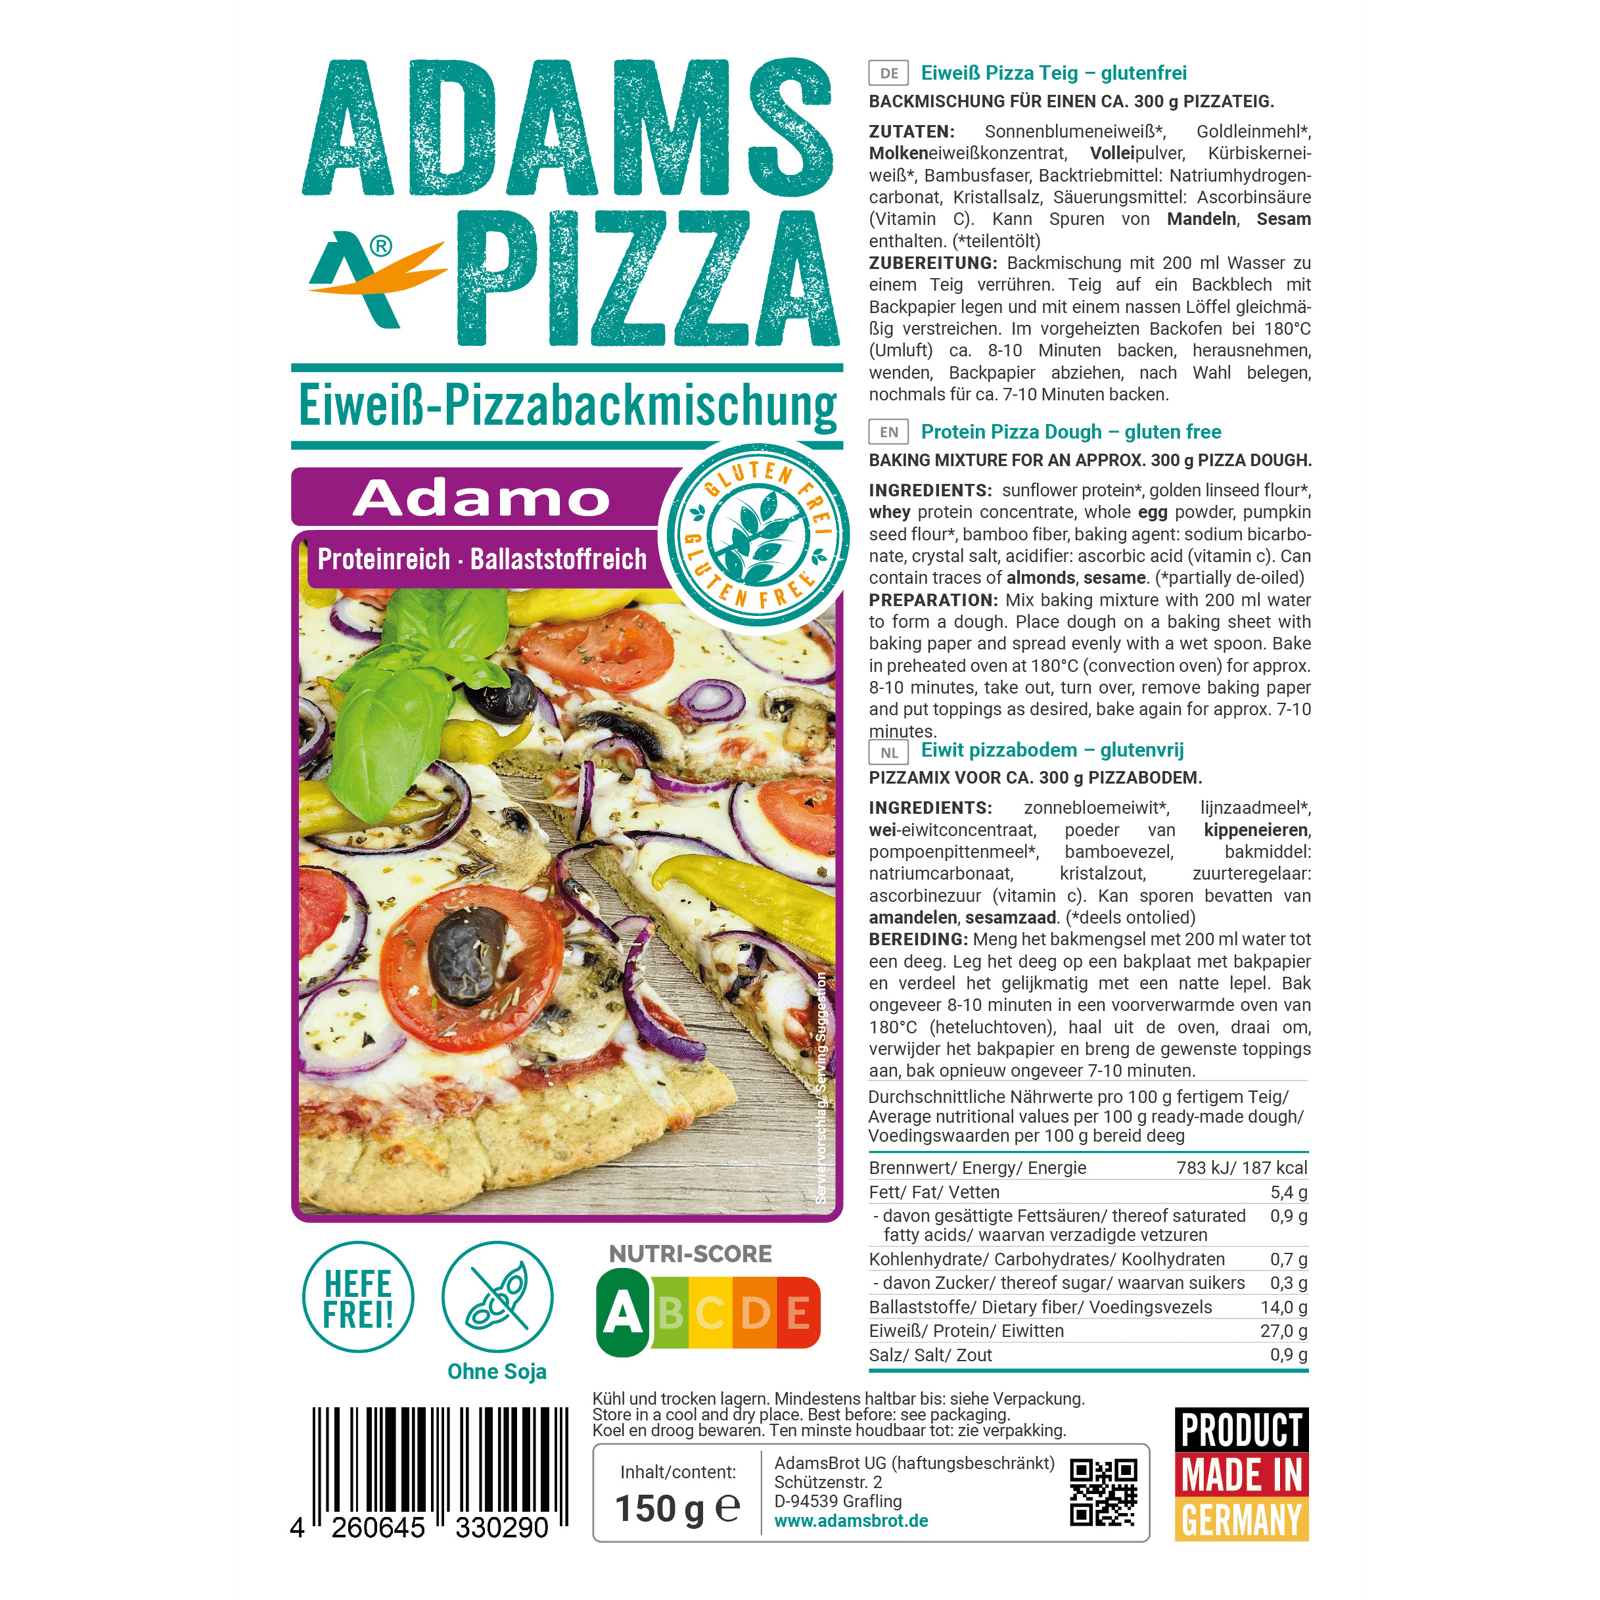 Bild des Etiketts von unserem glutenfreien, ketogenen und hefefreien Produkt, mit dem Namen "Pizza Backmischung Adamo"